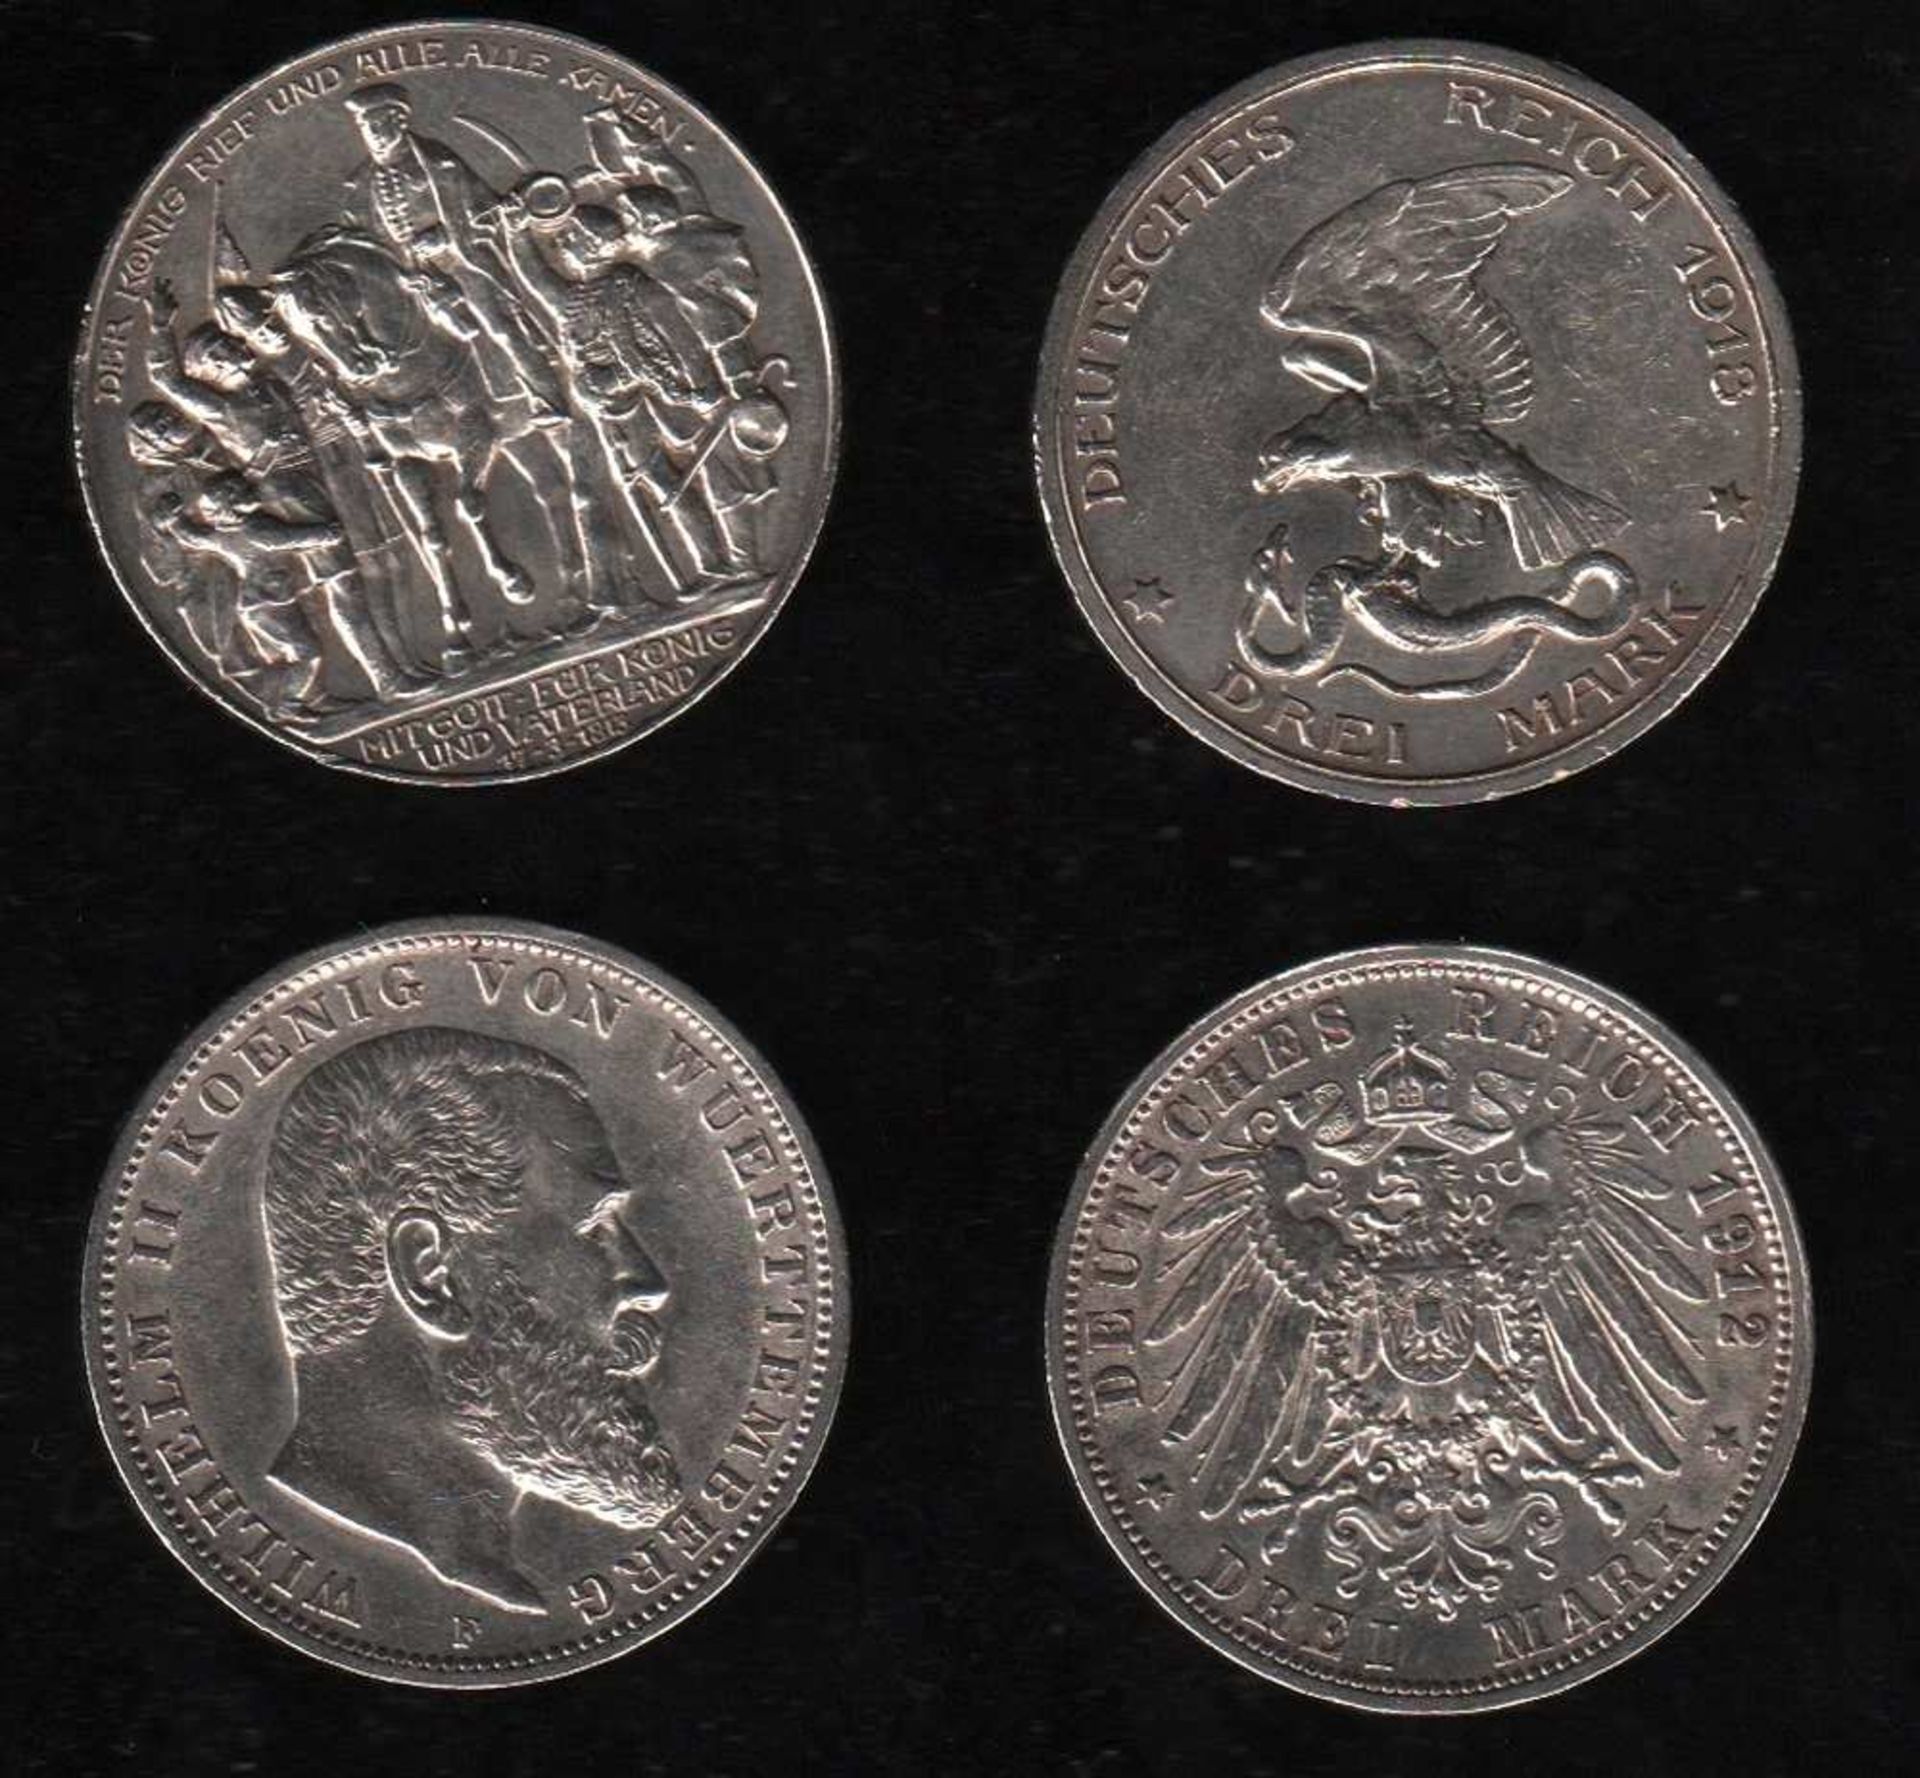 # Deutsches Reich. Silbermünze. 3 Mark. Wilhelm II., König von Württemberg. F 1912. Vorderseite: